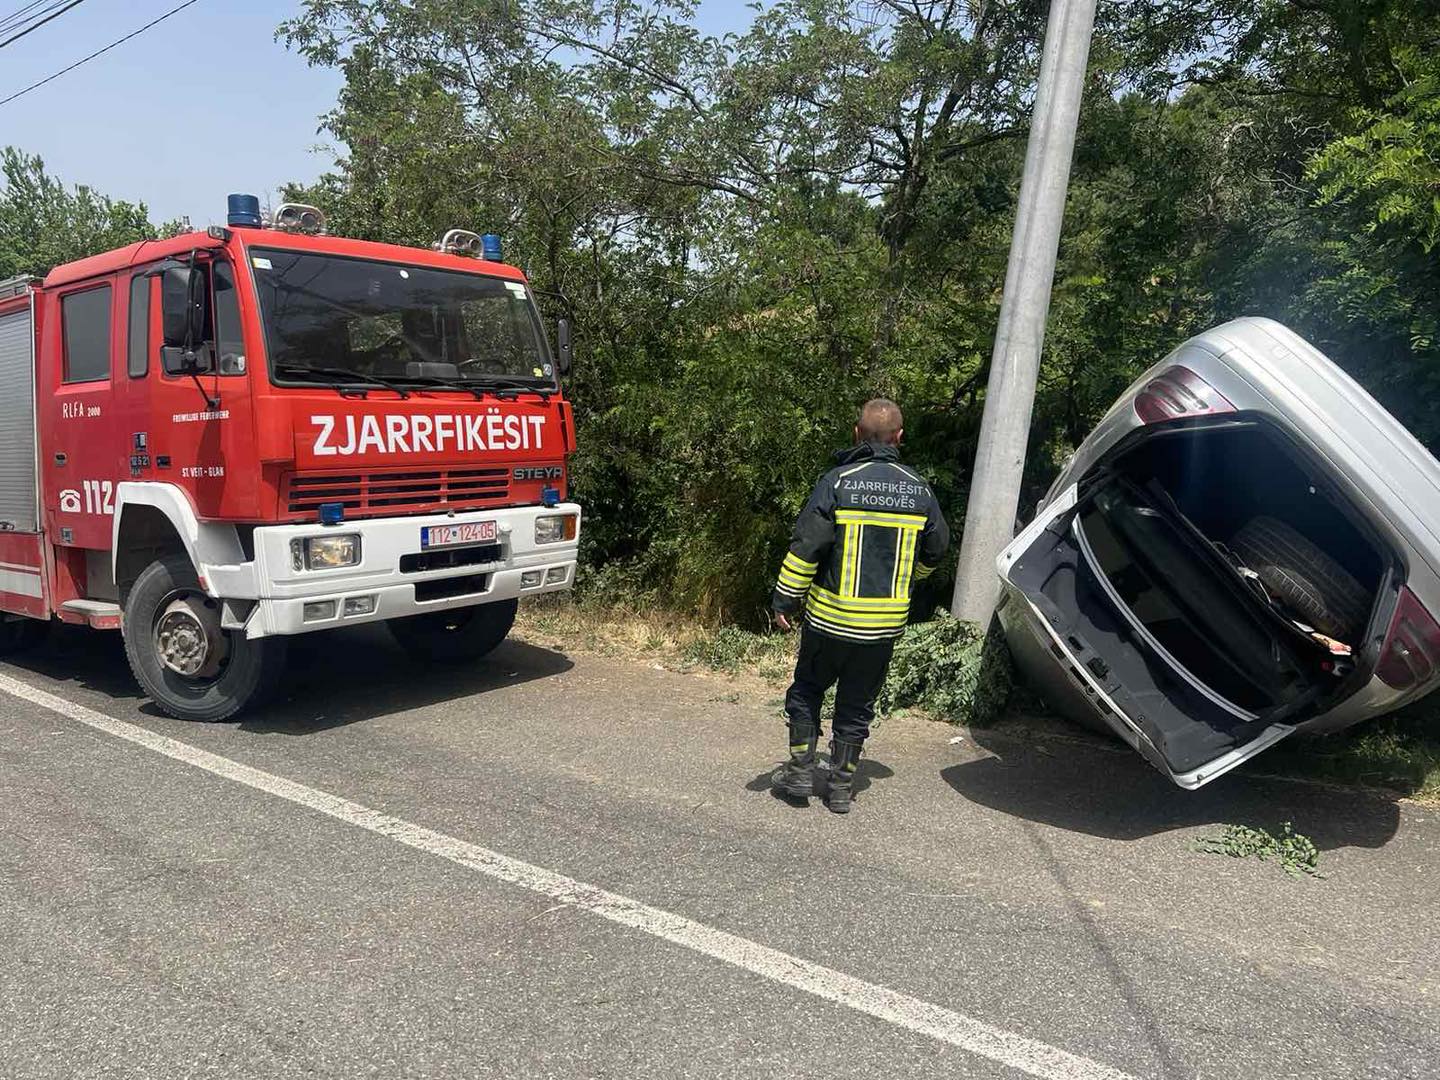 Rrokulliset një veturë në fshatin Budakovë të Suharekës, zjarrfikësit shpëtojnë dy persona